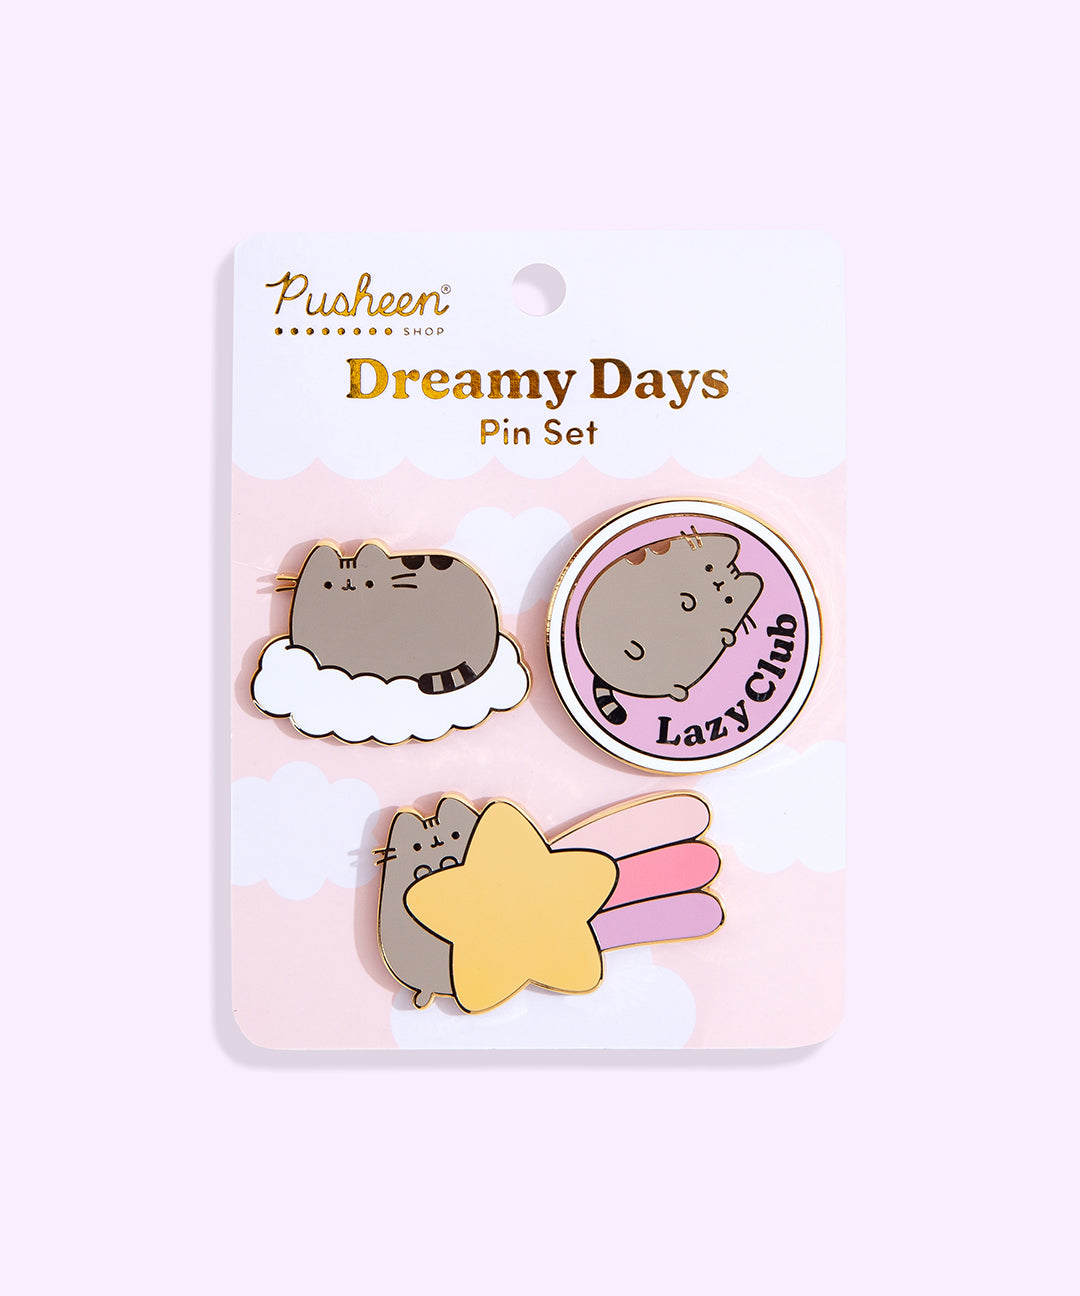 Pusheen Dreamy Days Pin Set